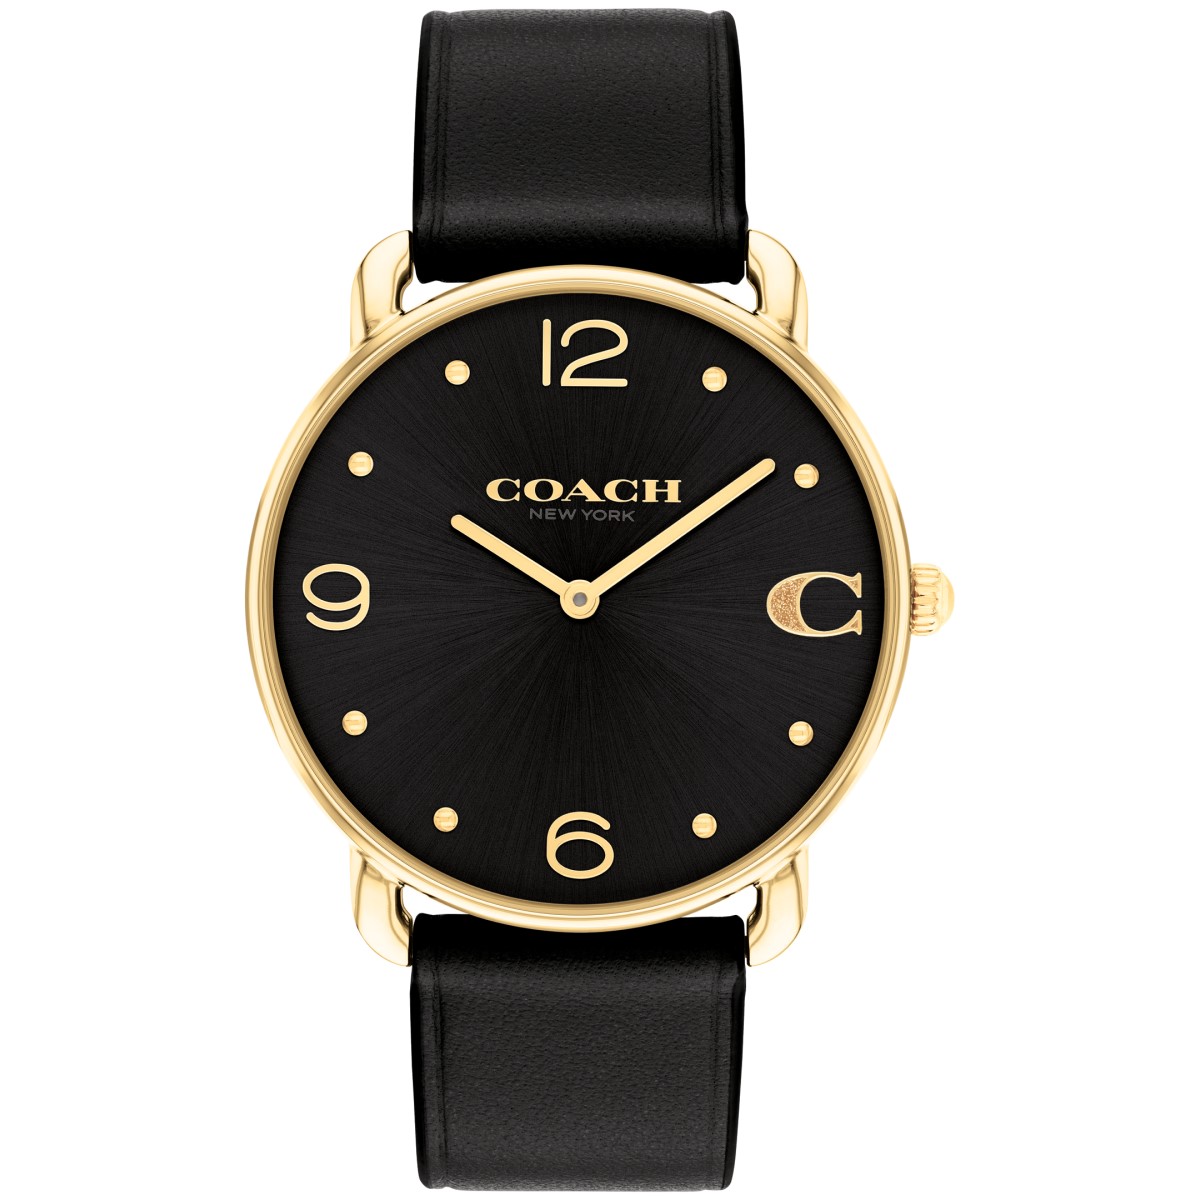 COACH コーチ 腕時計 Elliot Collection(エリオットコレクション) レディス 14504245